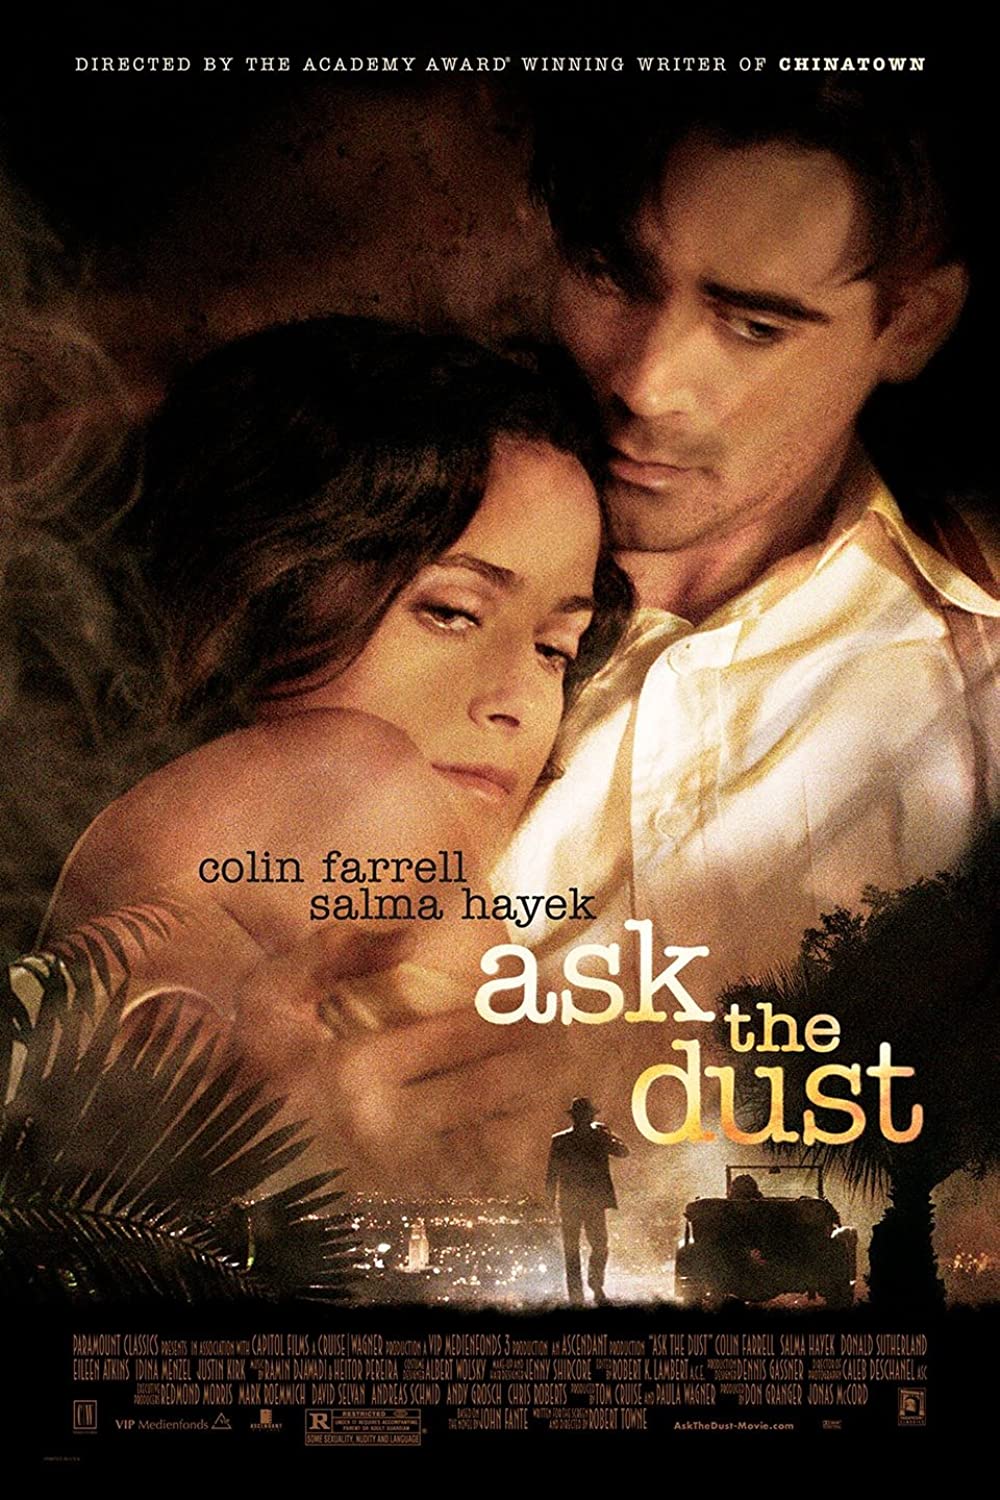 Filmbeschreibung zu Ask the Dust